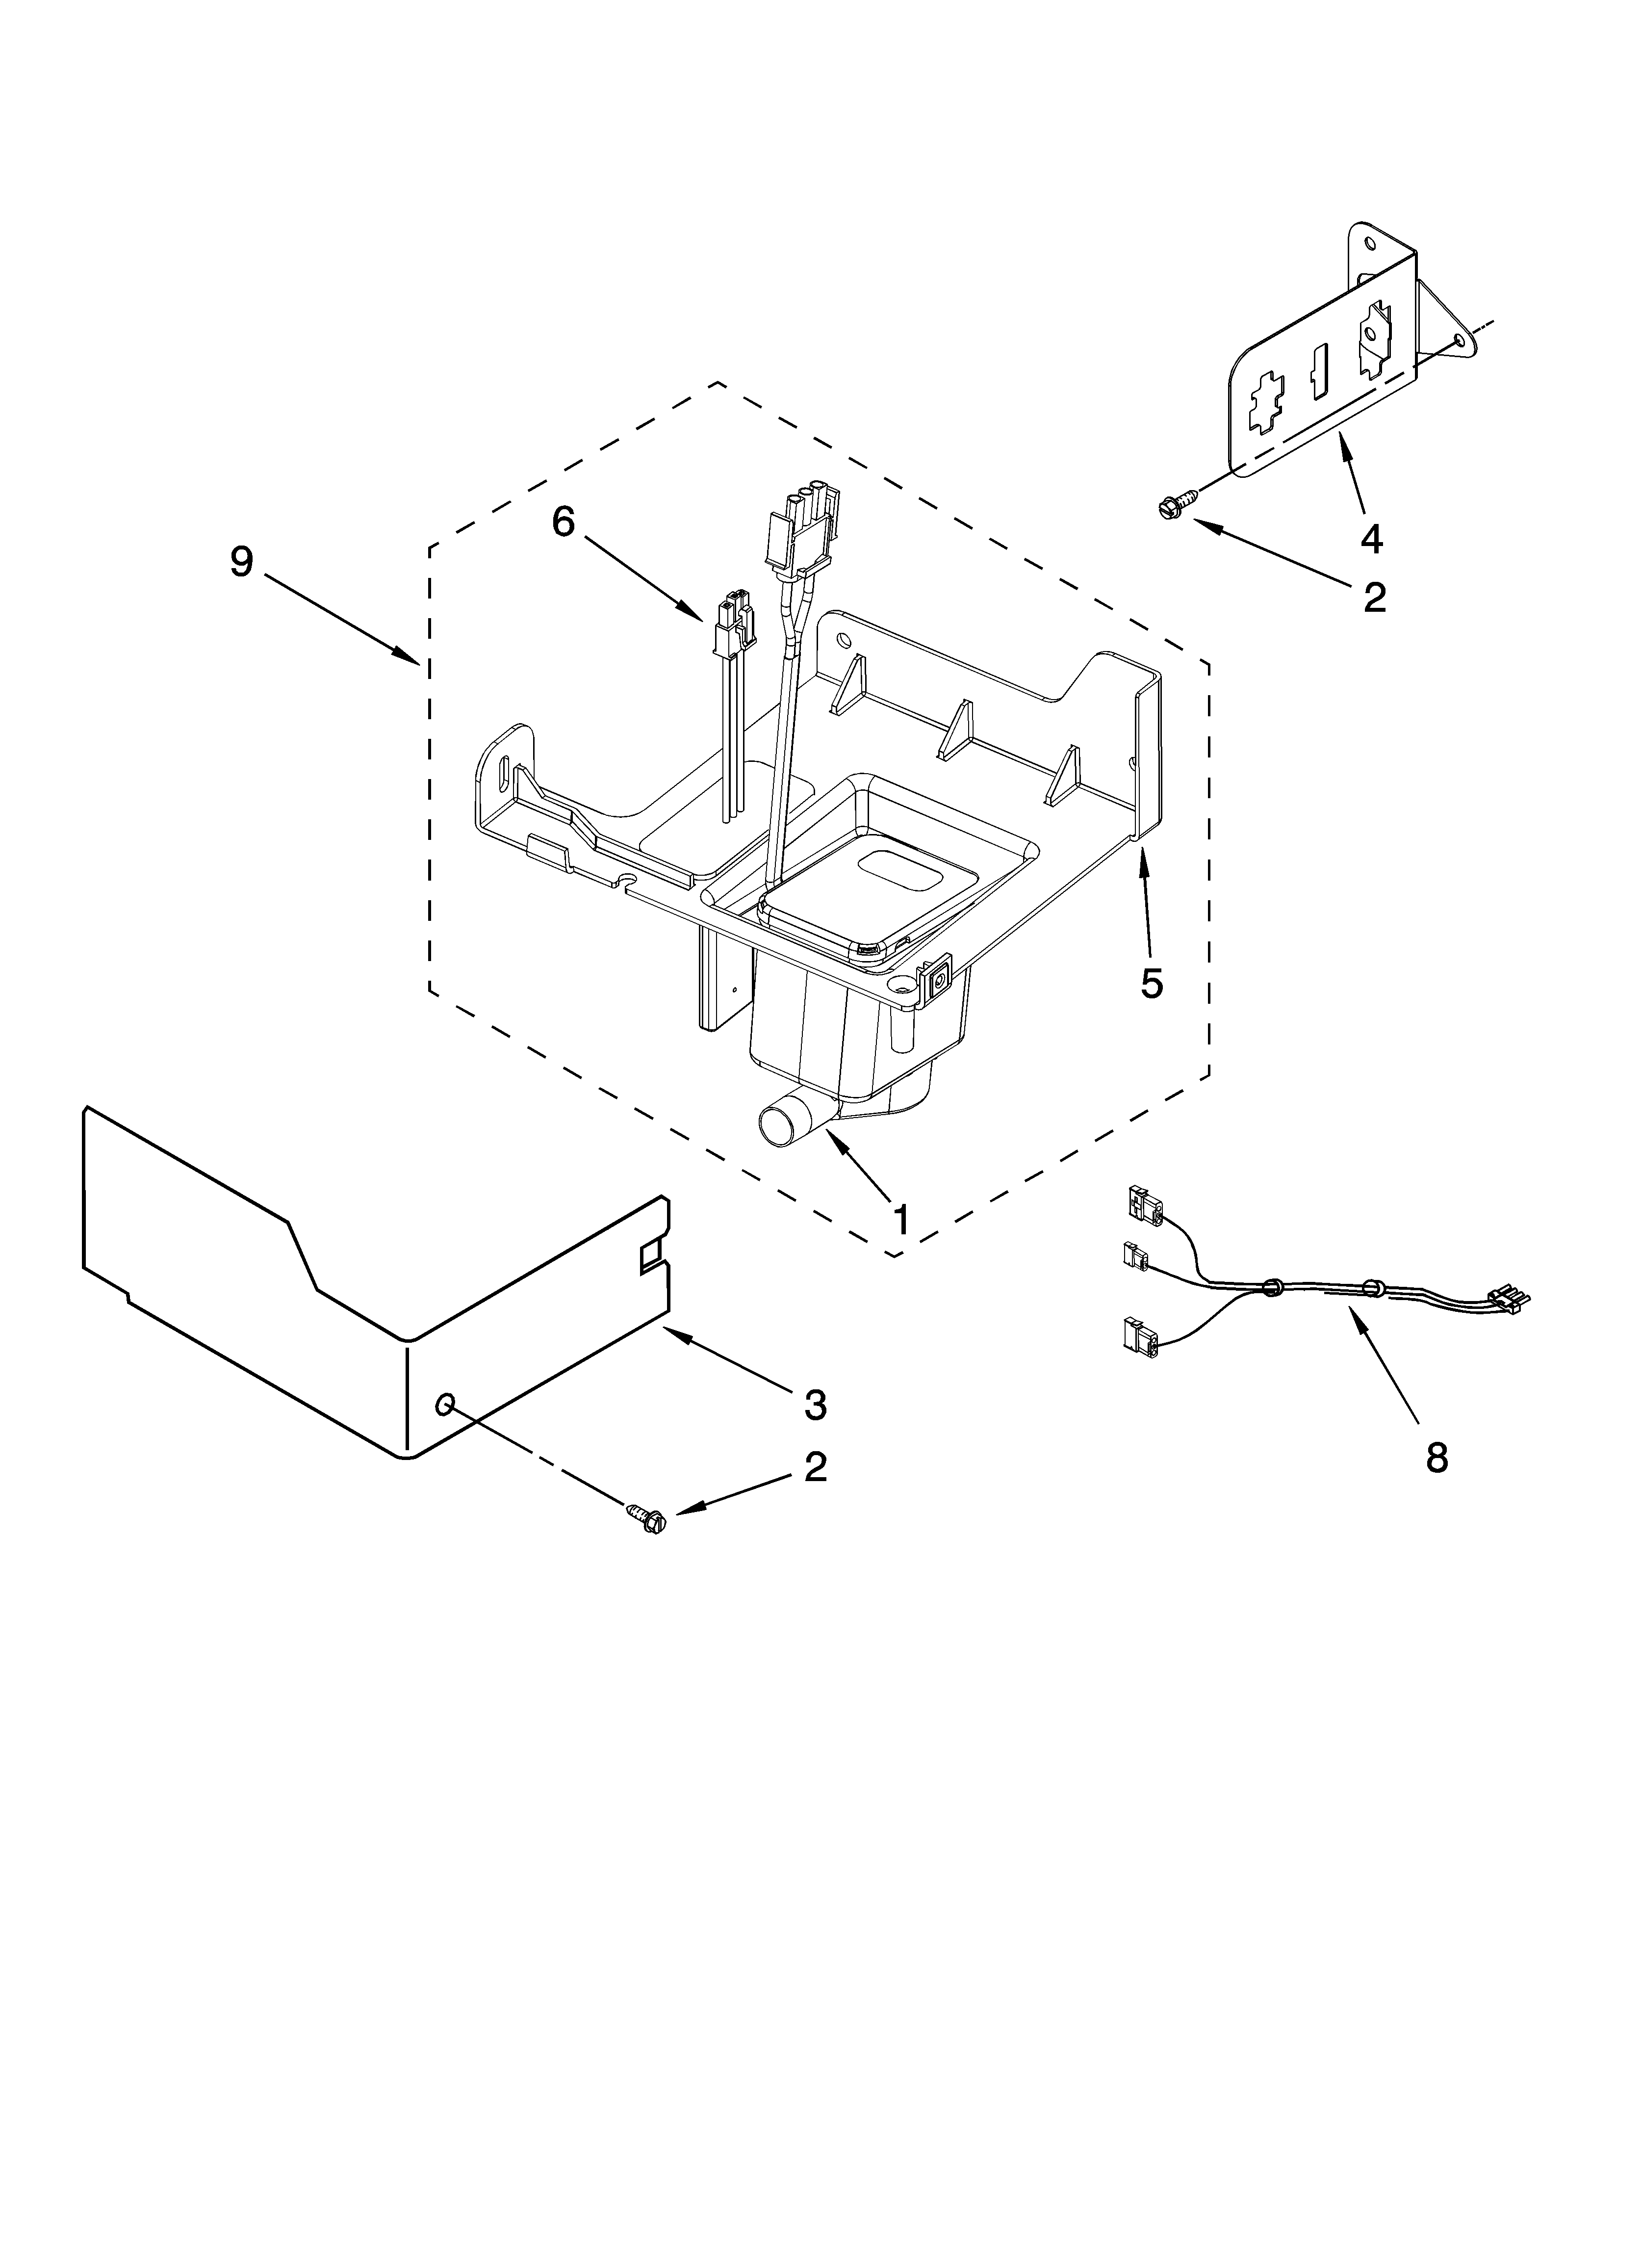 Kitchenaid Ice Maker Parts Diagram - Drivenheisenberg